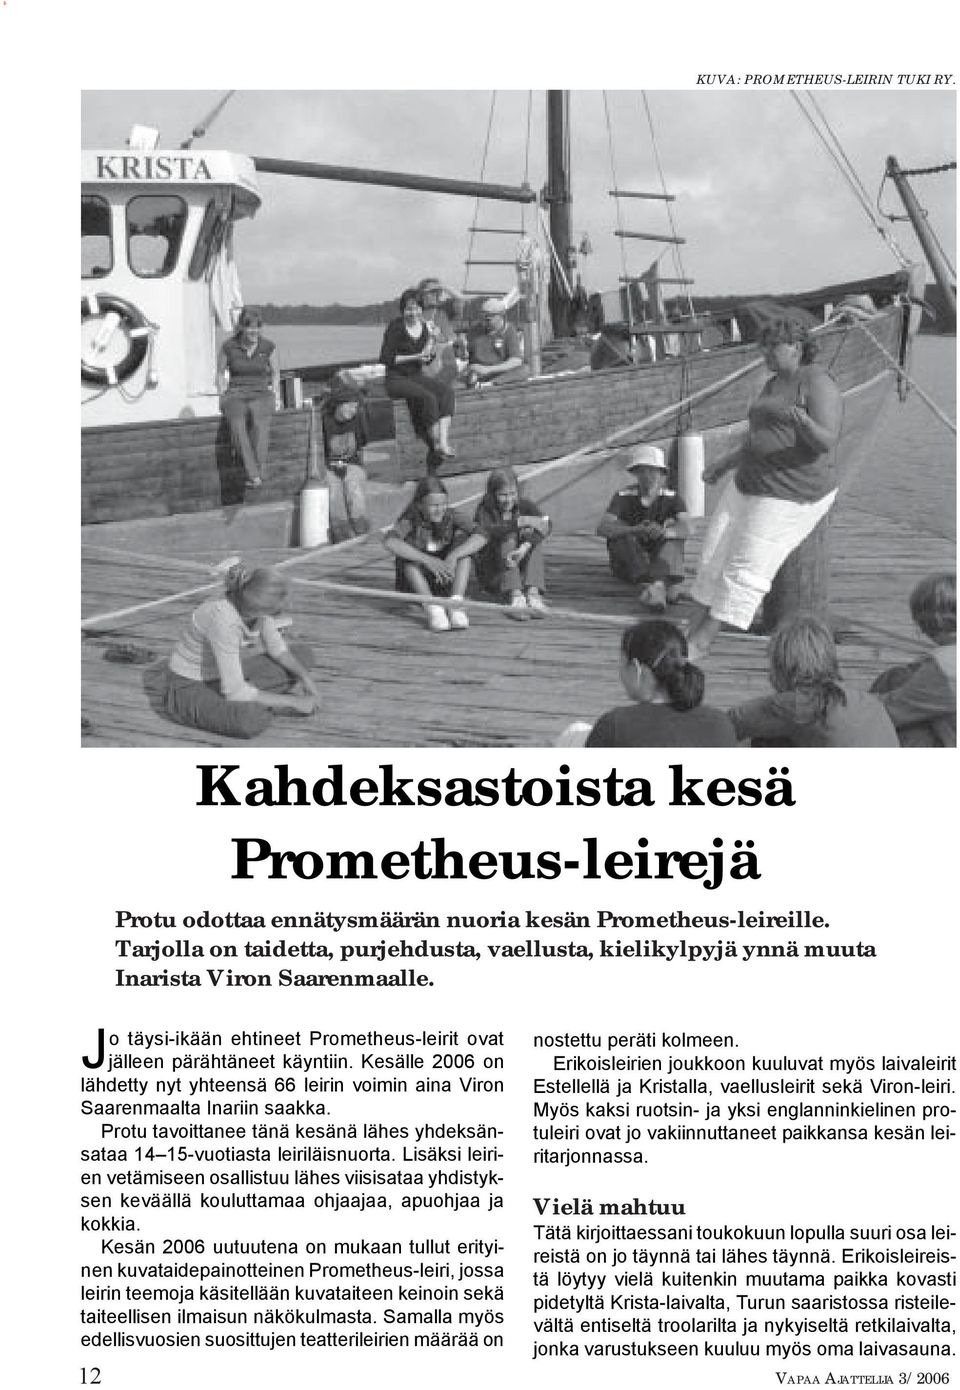 Kesälle 2006 on lähdetty nyt yhteensä 66 leirin voimin aina Viron Saarenmaalta Inariin saakka. Protu tavoittanee tänä kesänä lähes yhdeksänsataa 14 15-vuotiasta leiriläisnuorta.